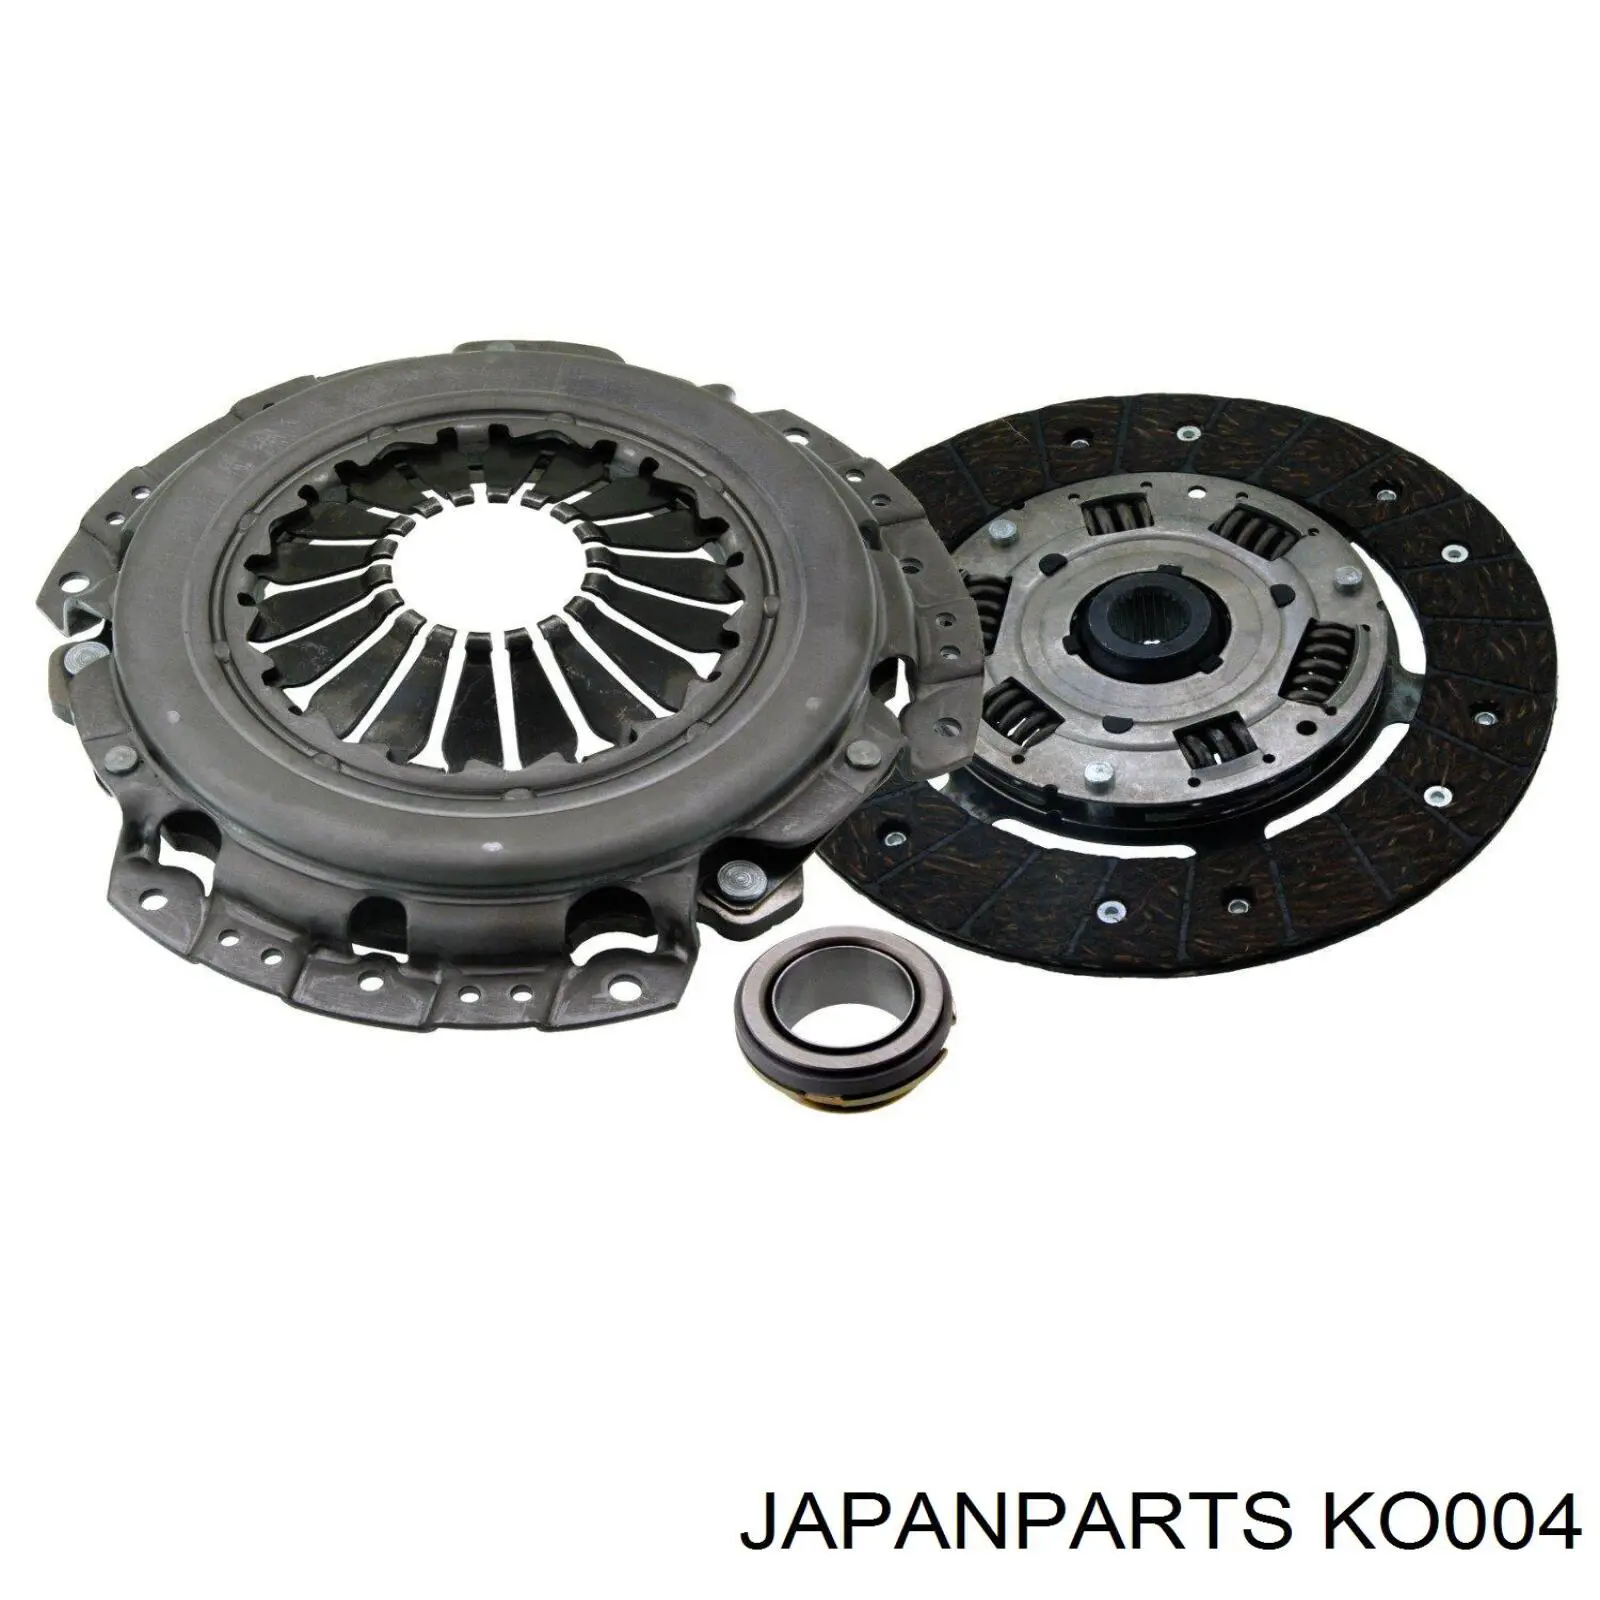 KO004 Japan Parts tapa de aceite de motor